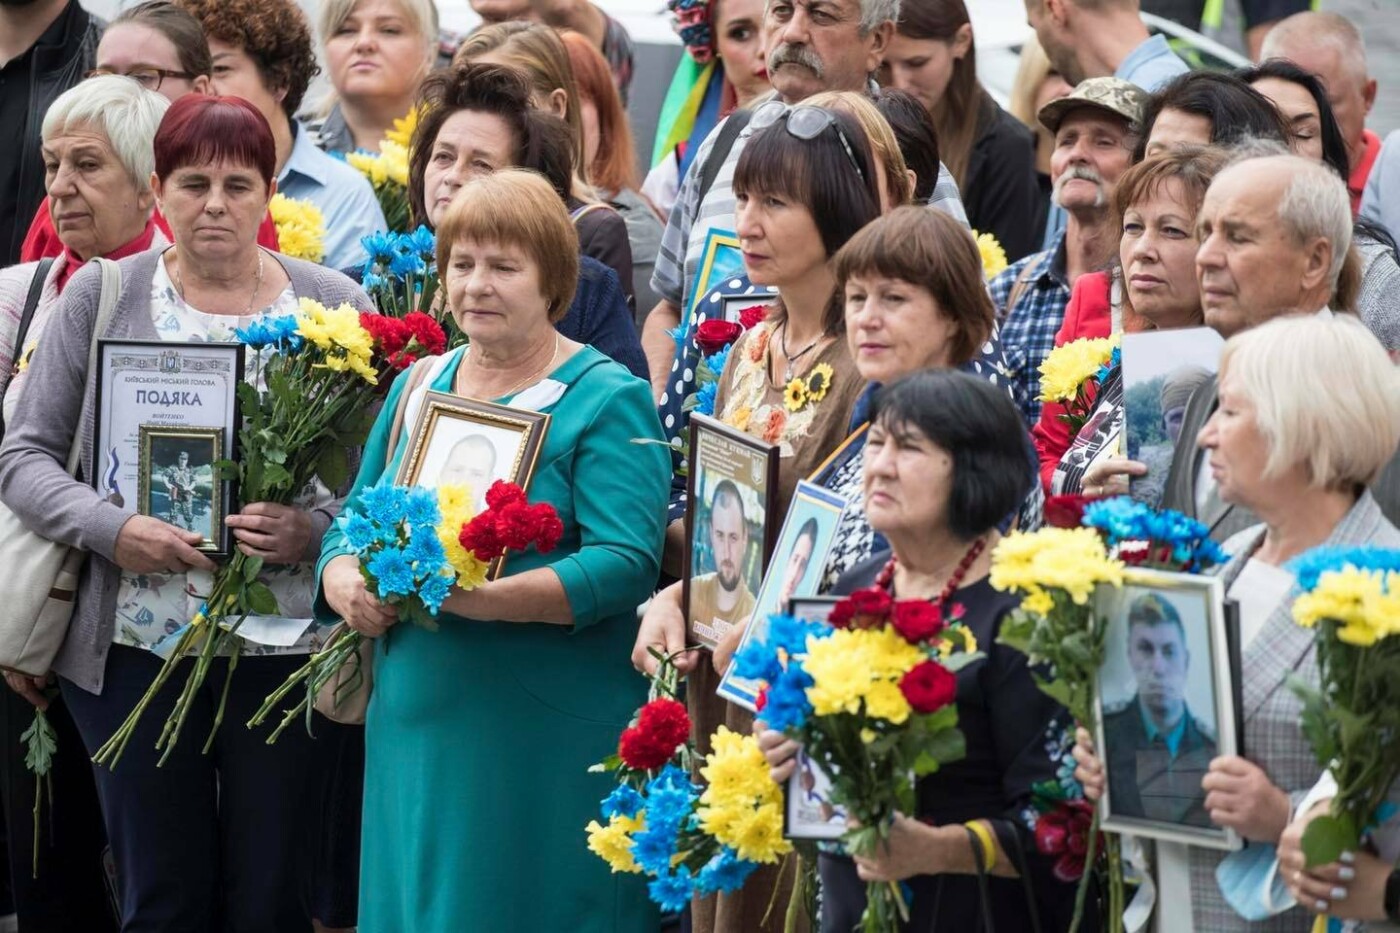 В Киеве открыли Мемориал памяти погибшим участникам АТО/ООС, - ФОТО